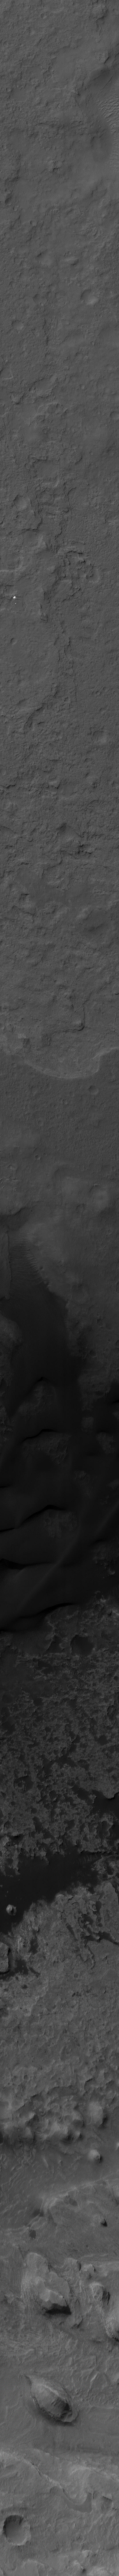 MSL MRO HiRISE